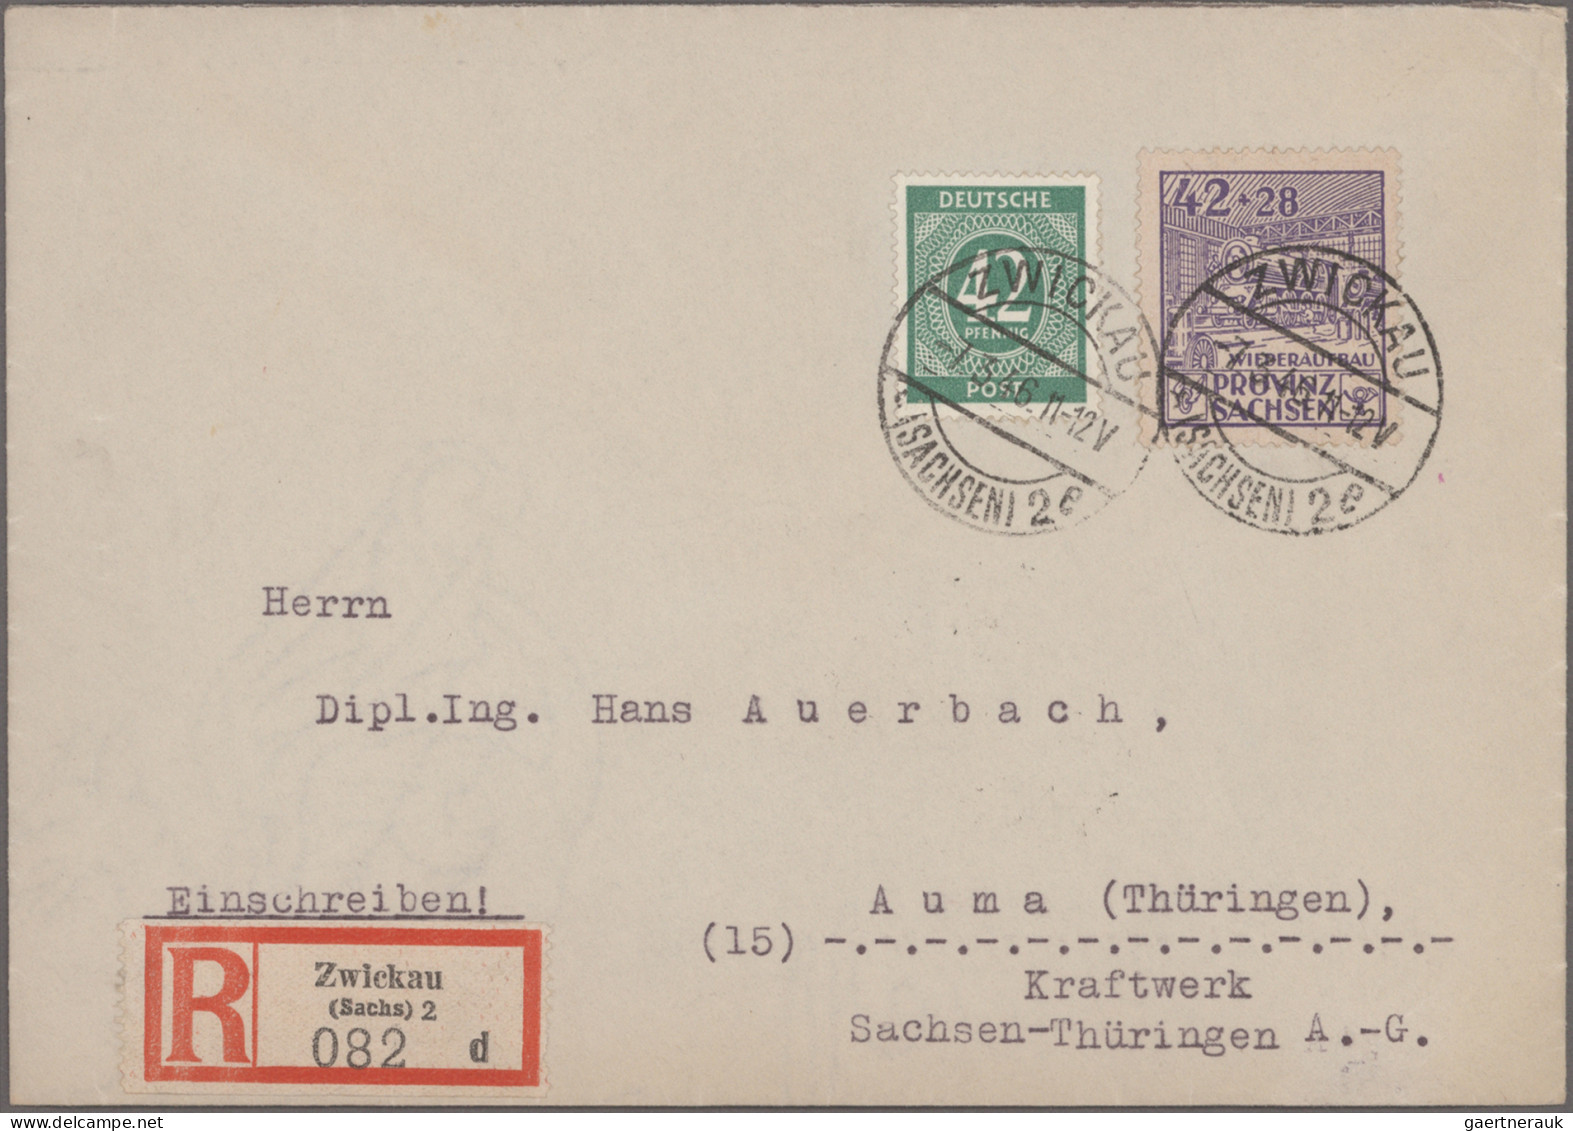 Nachlässe: DEUTSCHLAND 1945-1950, Nachlass-Briefposten Mit Briefen, Karten Und G - Vrac (min 1000 Timbres)